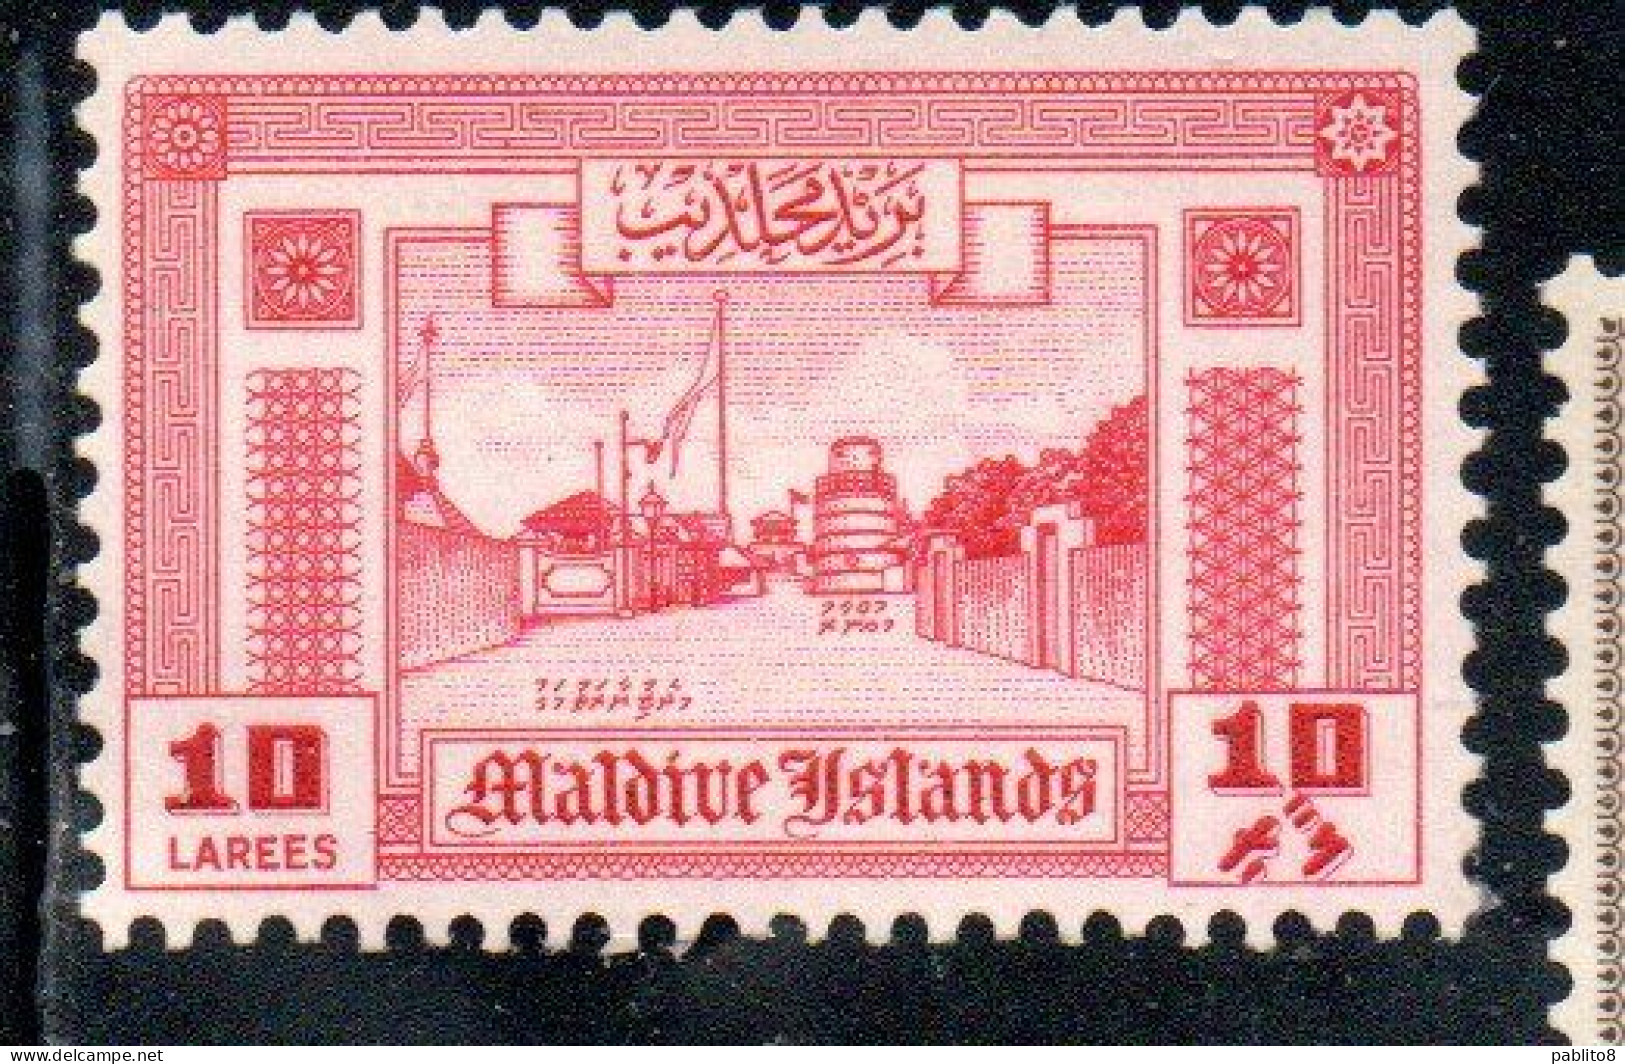 MALDIVES ISLANDS ISOLE MALDIVE BRITISH PRETOCTARATE 1960 ROAD TO MINARET 10L MNH - Maldives (...-1965)